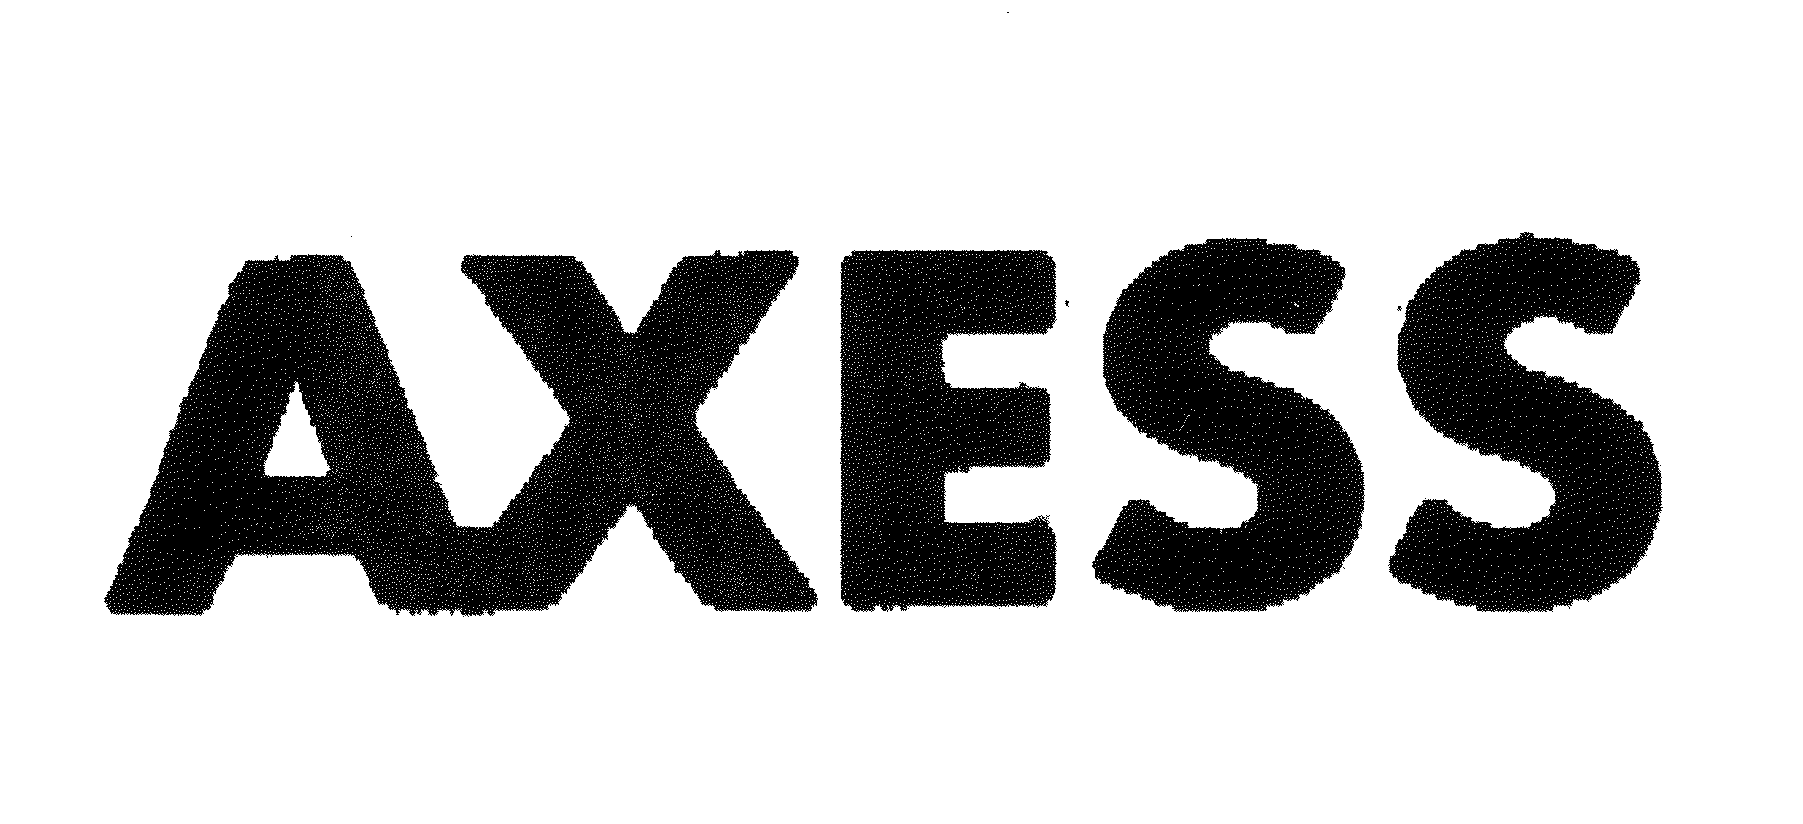 AXESS